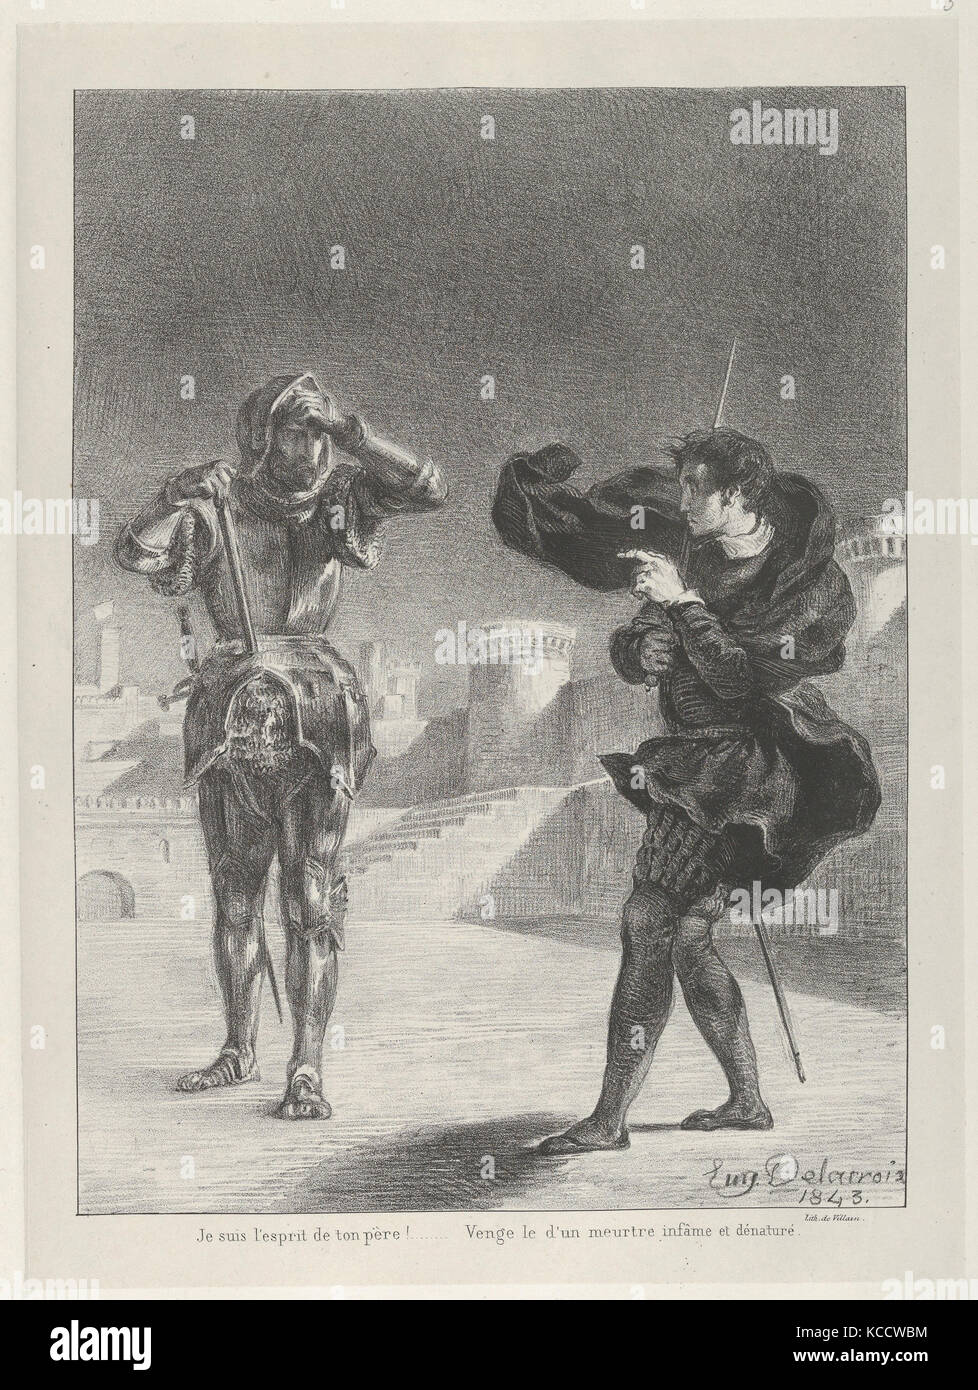 Il Fantasma sulla terrazza, 1843, litografia, primo stato di cinque, Immagine: 10 3/16 x 7 1/2 in. (25,8 x 19,1 cm), stampe, Eugène Foto Stock